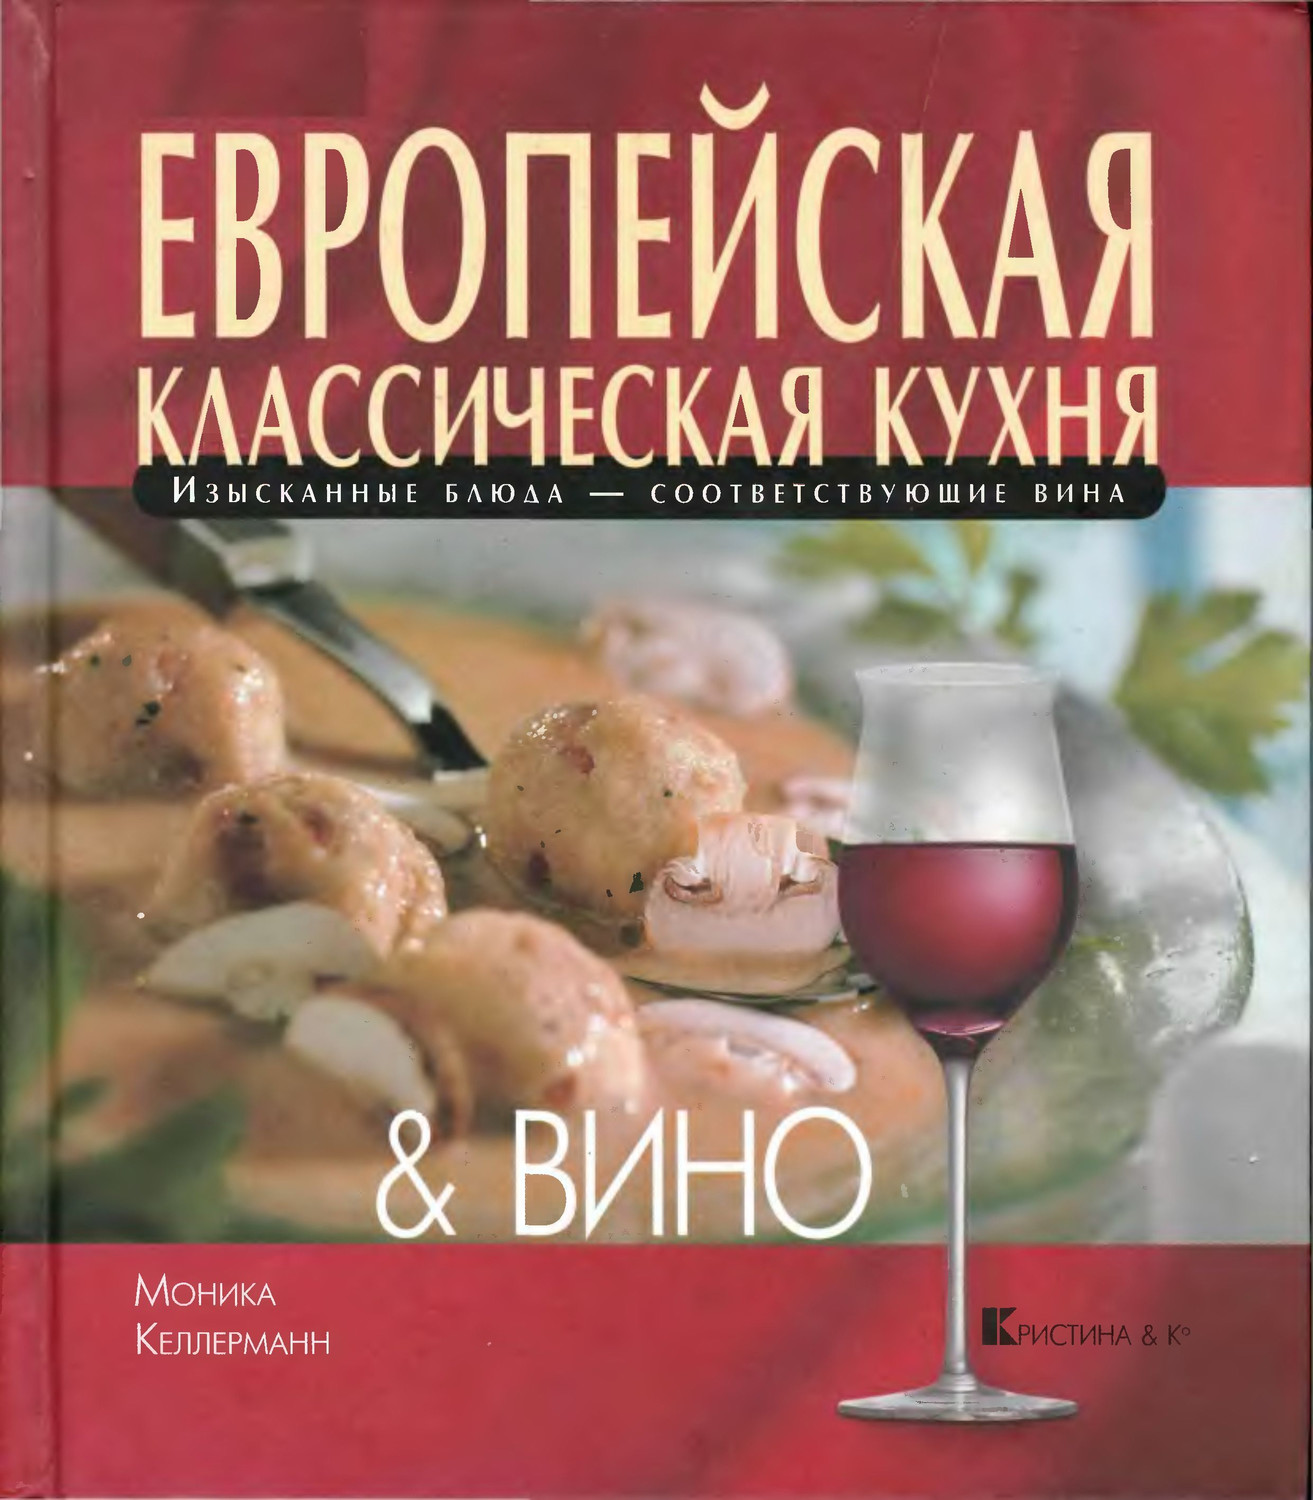 Европейская классическая кухня & вино